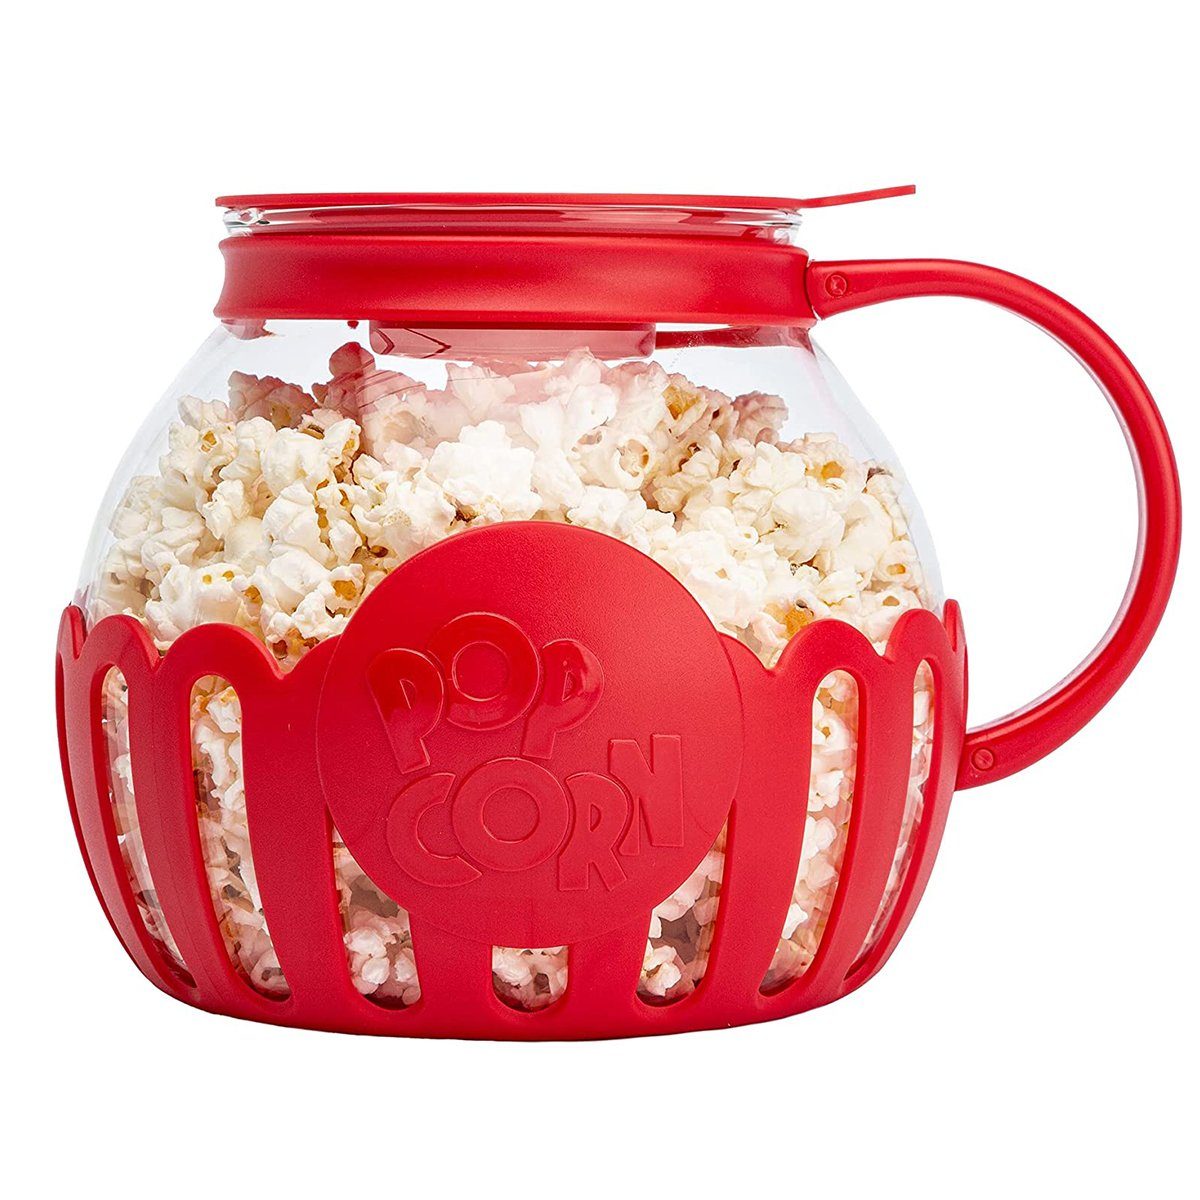 KÜLER Popcornmaschine Popcorn Maker, Mikrowellen-Popcorn-Kessel, Popcorn-Eimer Dose, Popcornmaschine für die Mikrowelle, spülmaschinenfest zur Reinigung